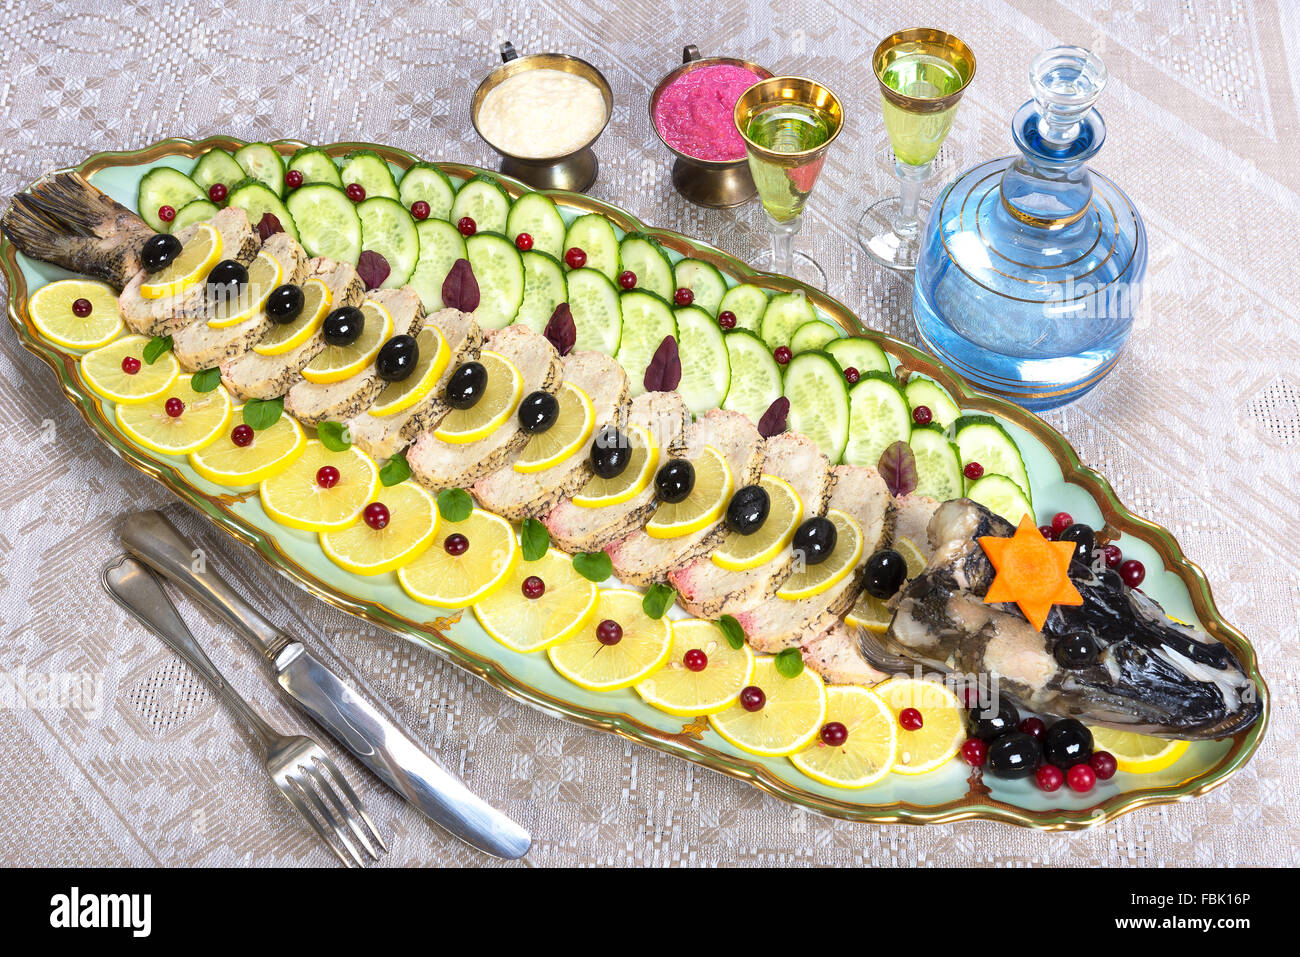 Ein traditionelles jüdisches Gericht Ashkenazim gemacht von entbeintem gehackten Fisch, meist von Hecht, gekocht mit Gemüse und Gewürzen Stockfoto